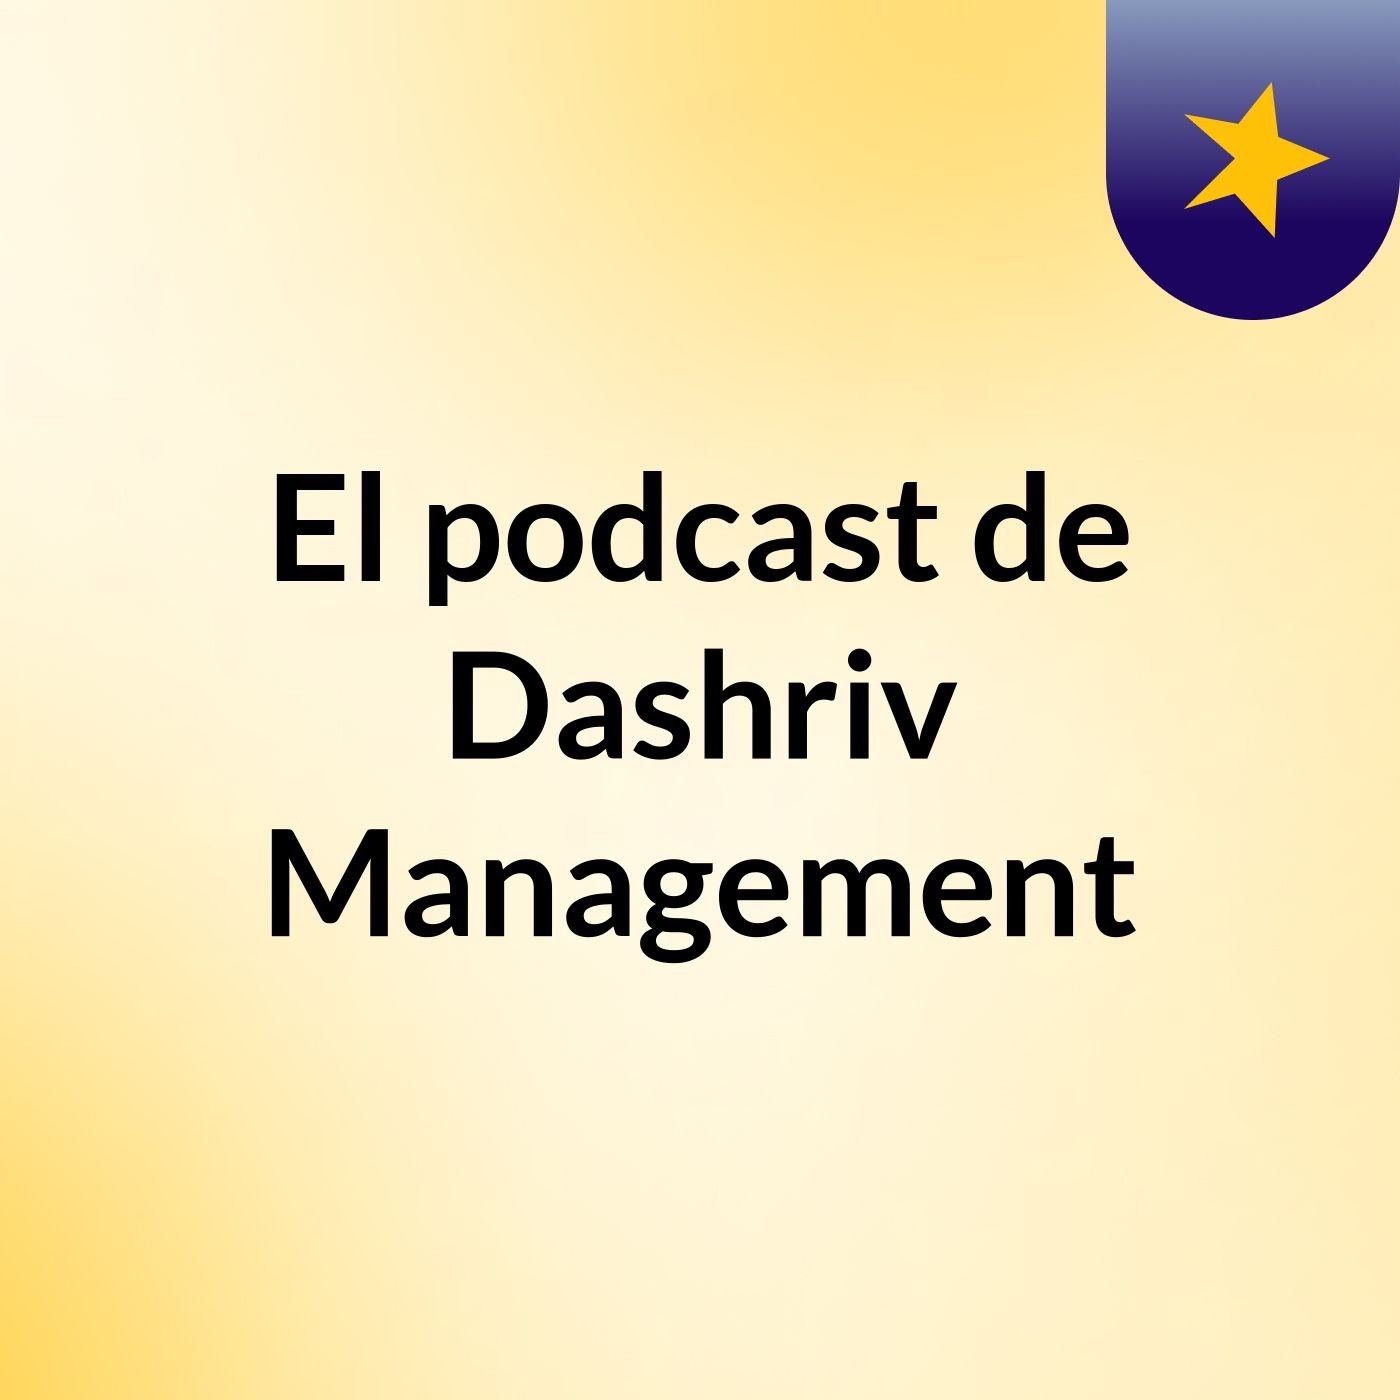 El podcast de Dashriv Management